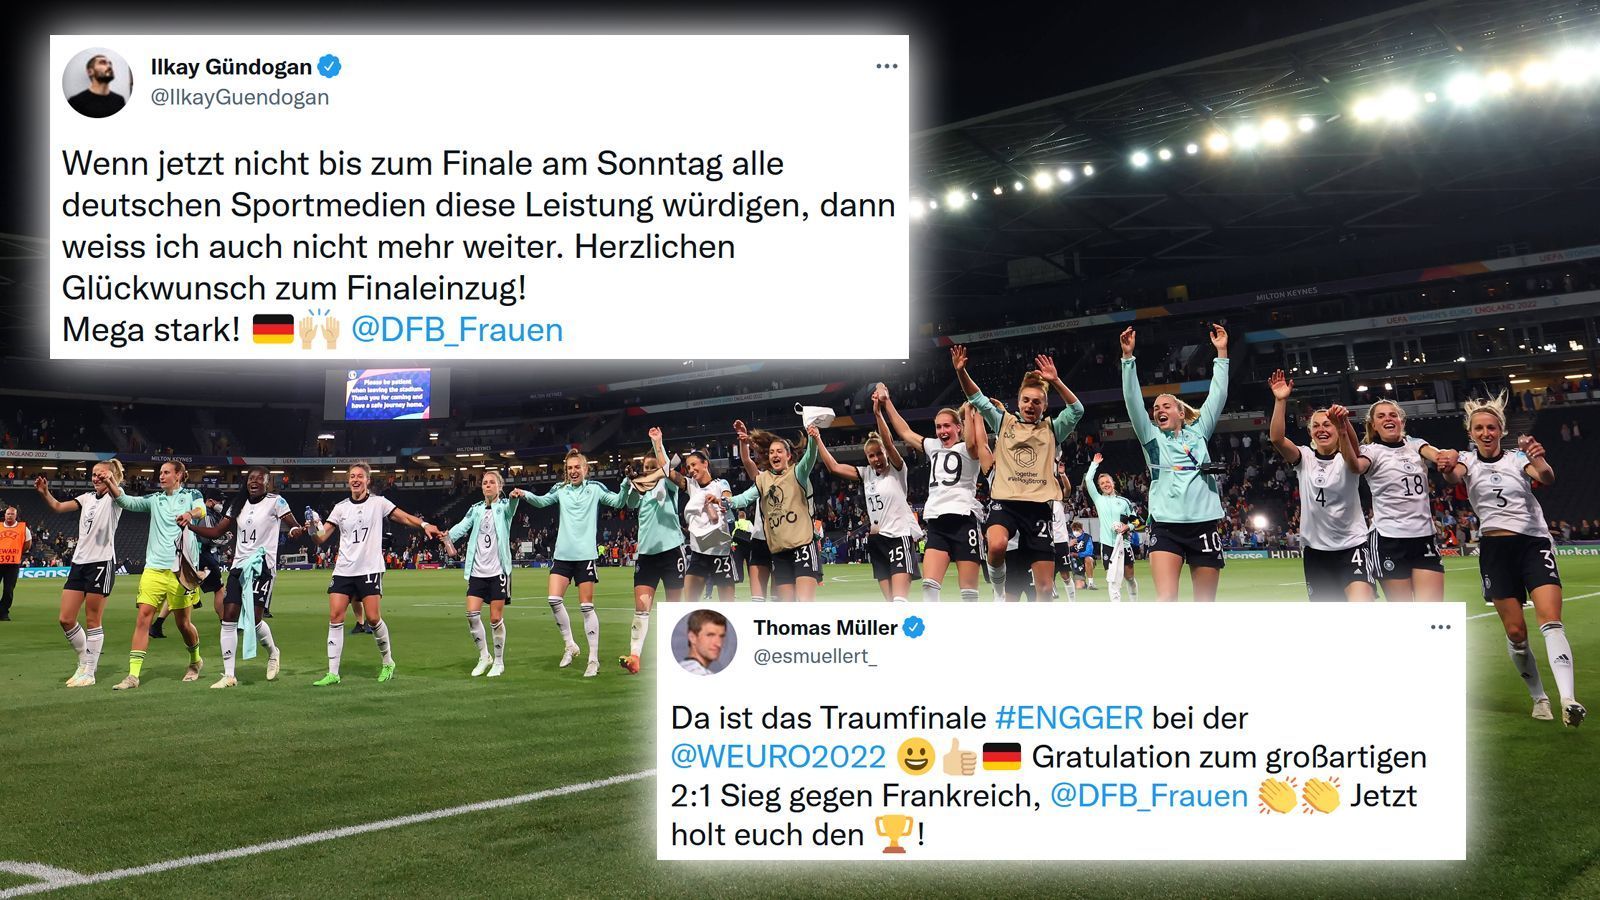 
                <strong>DFB-Männer loben EM-Heldinnen</strong><br>
                Auch die beiden Nationalspieler Thomas Müller und Ilkay Gündogan meldeten sich zu Wort und freuten sich für die DFB-Frauen. Müller sprach sogar von einem "Traumfinale".
              